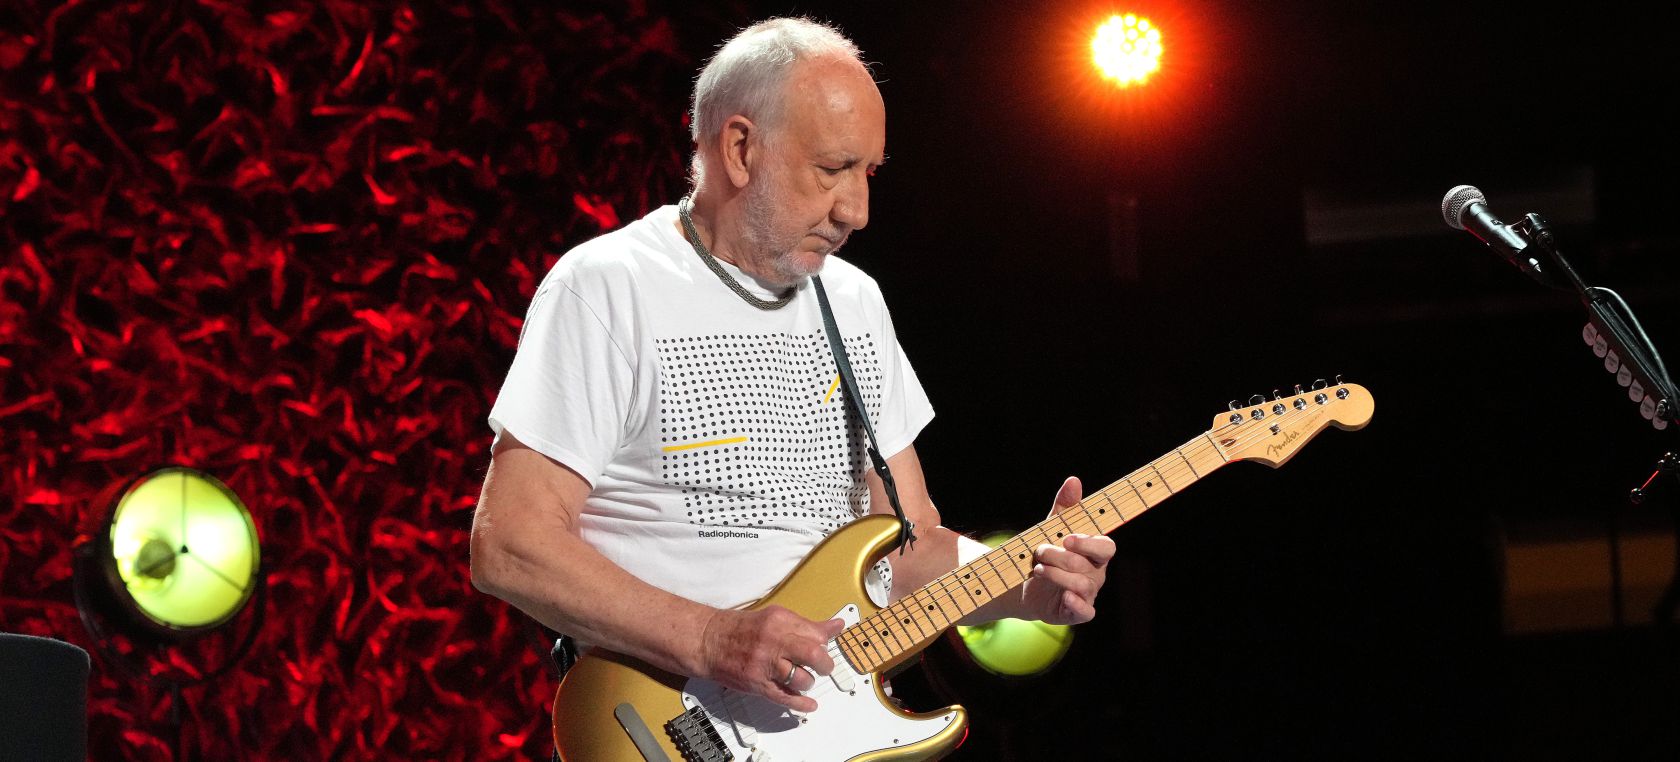 Pete Townshend, guitarrista de The Who, graba su primera canción en solitario en 29 años